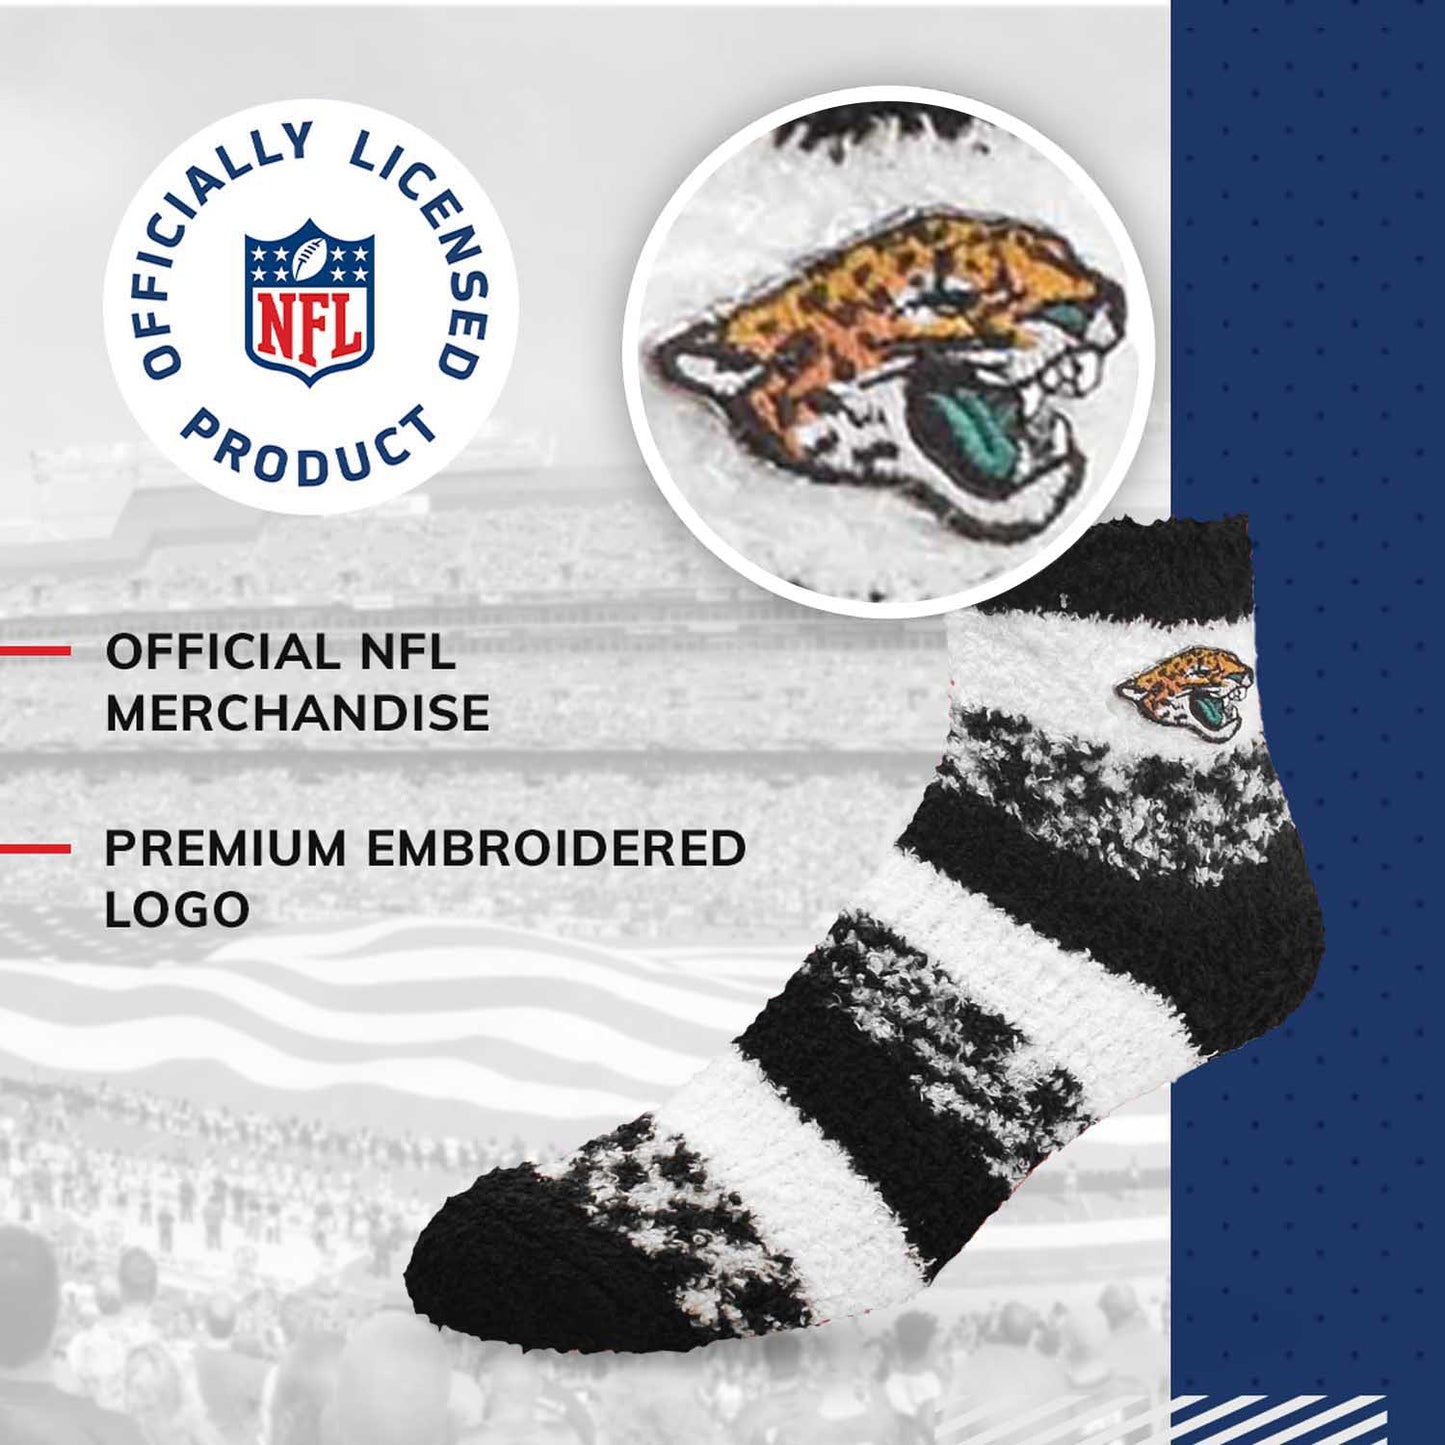 Jacksonville Jaguars NFL Cozy Soft Slipper Socks - Black